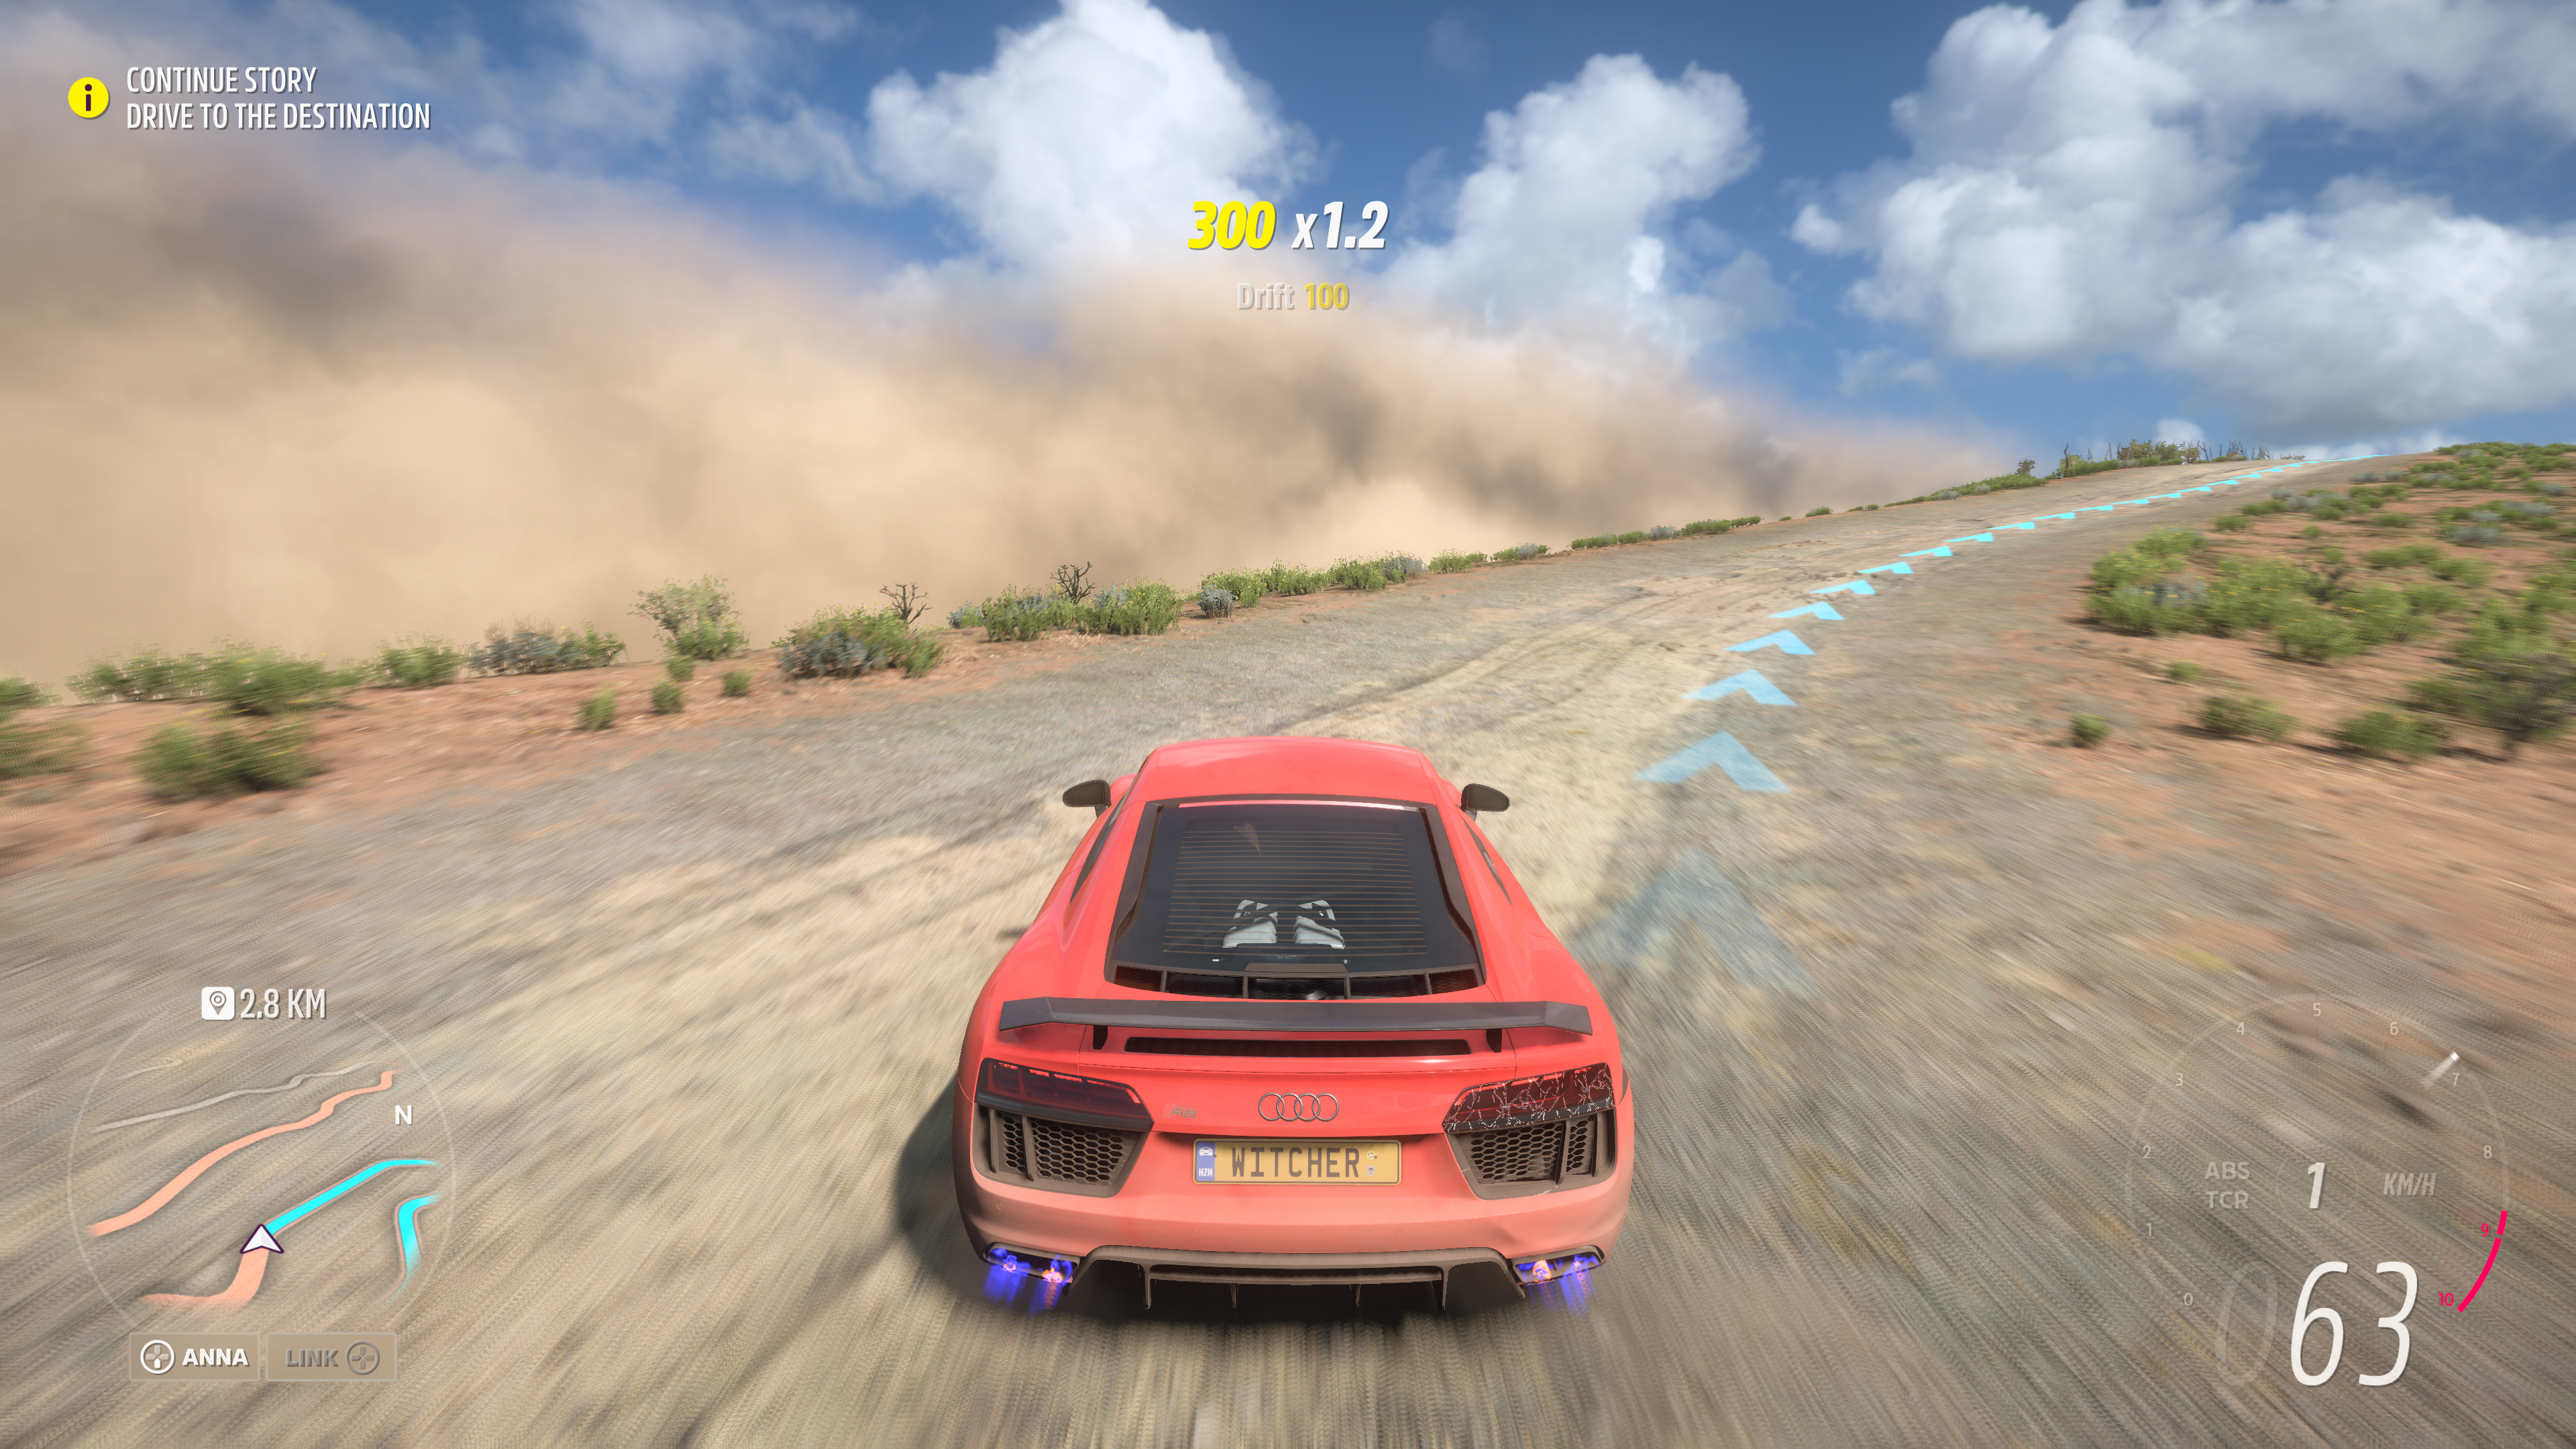 Conduire au milieu d'une tempête de sable est ardu, mais très excitant!